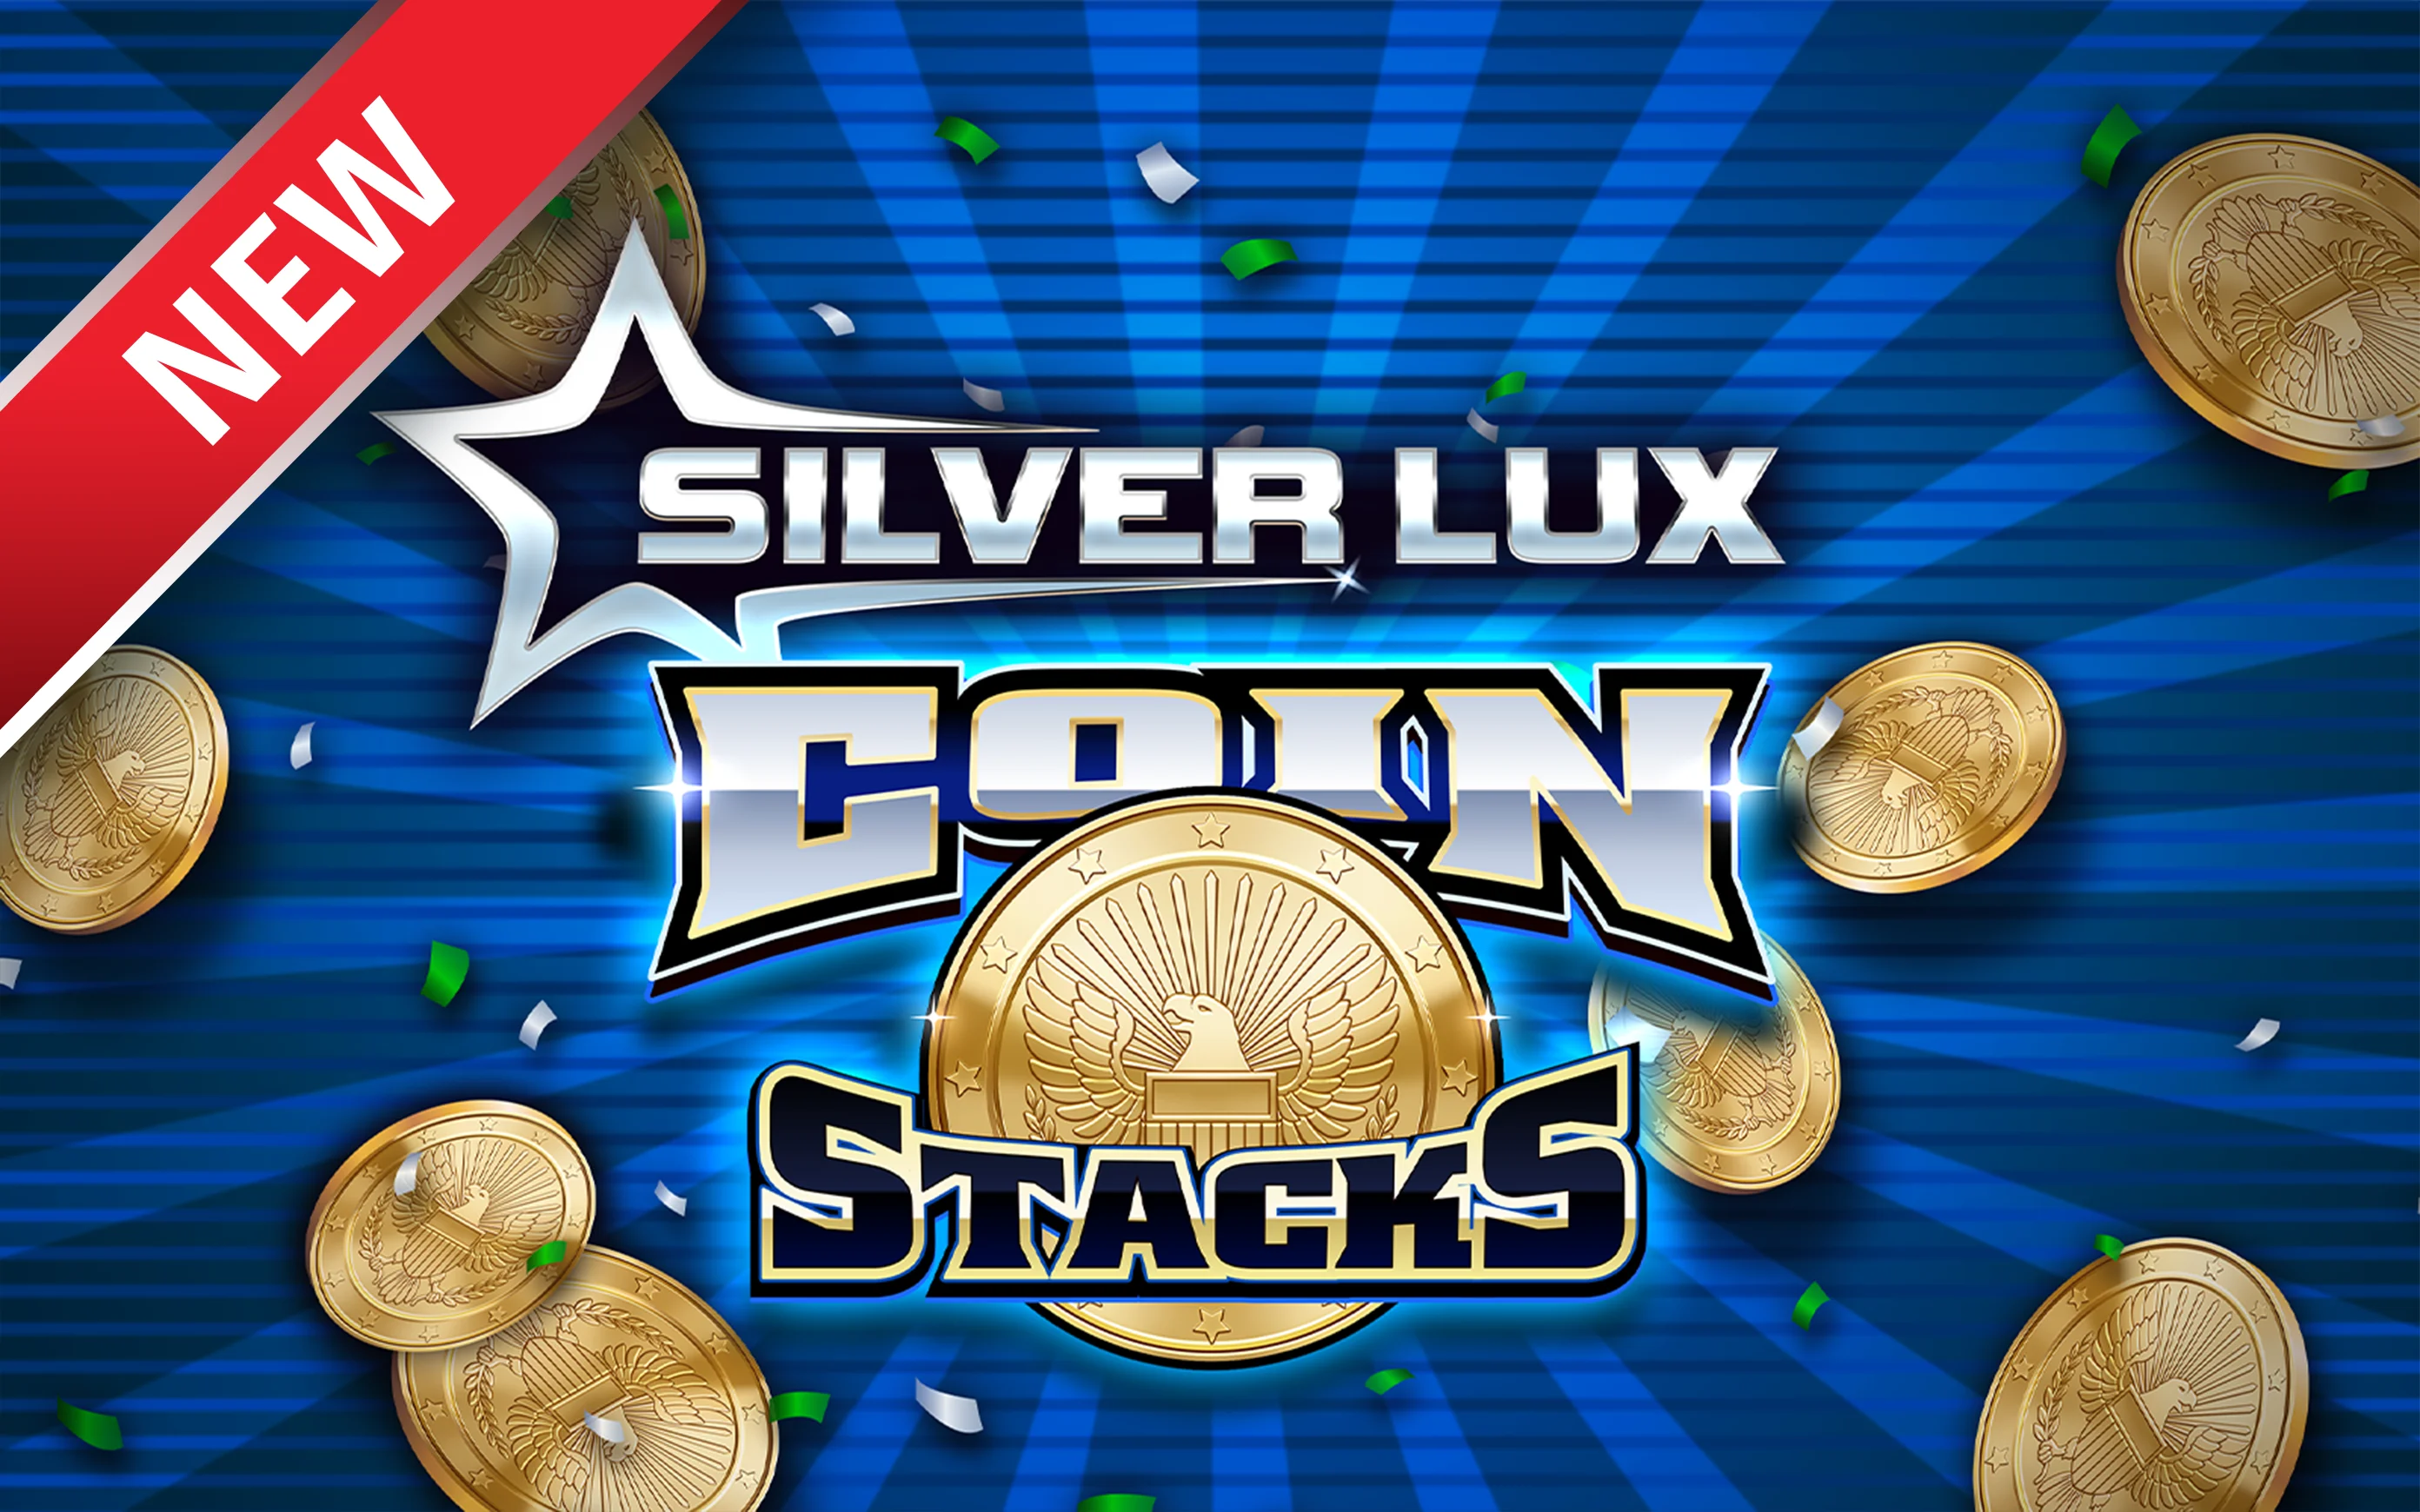 Zagraj w Silver Lux – Coin Stacks w kasynie online Starcasino.be